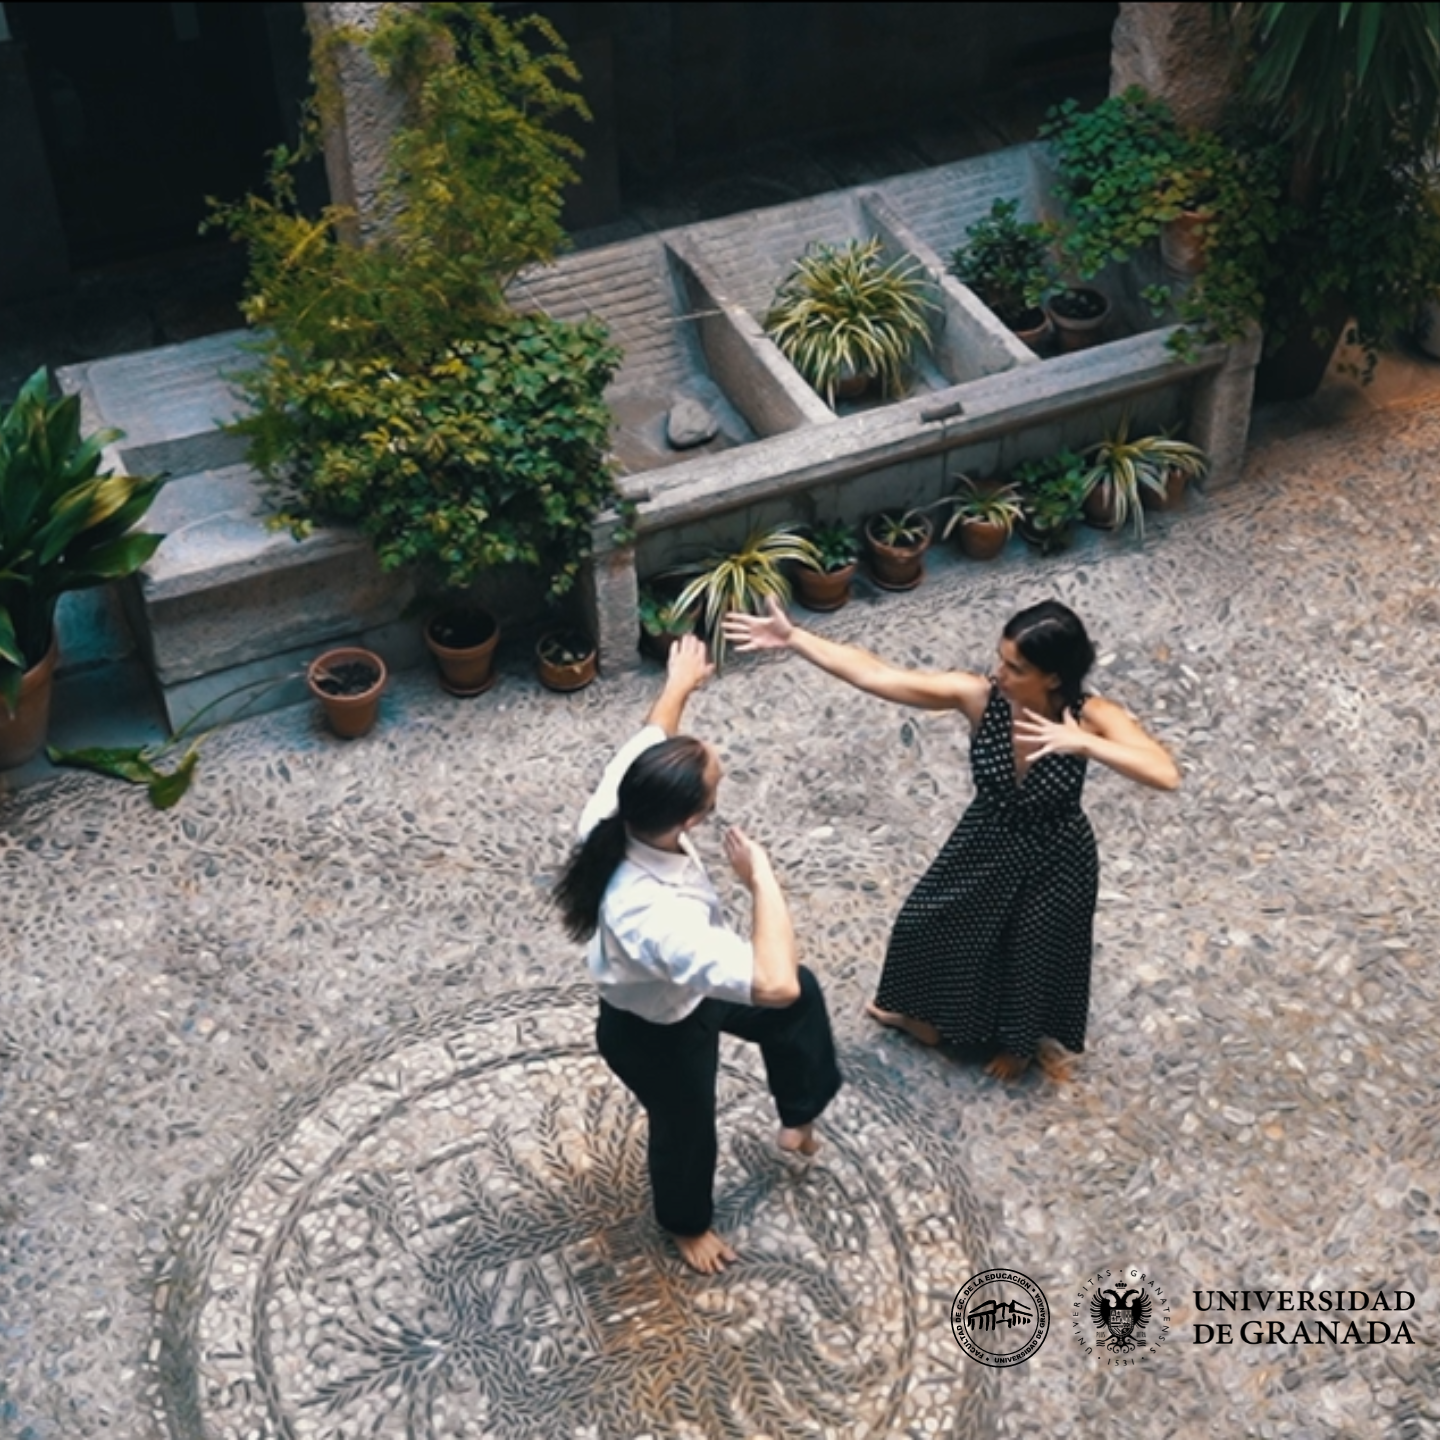 Fotografía de la presentación con 2 personas bailando en un patio